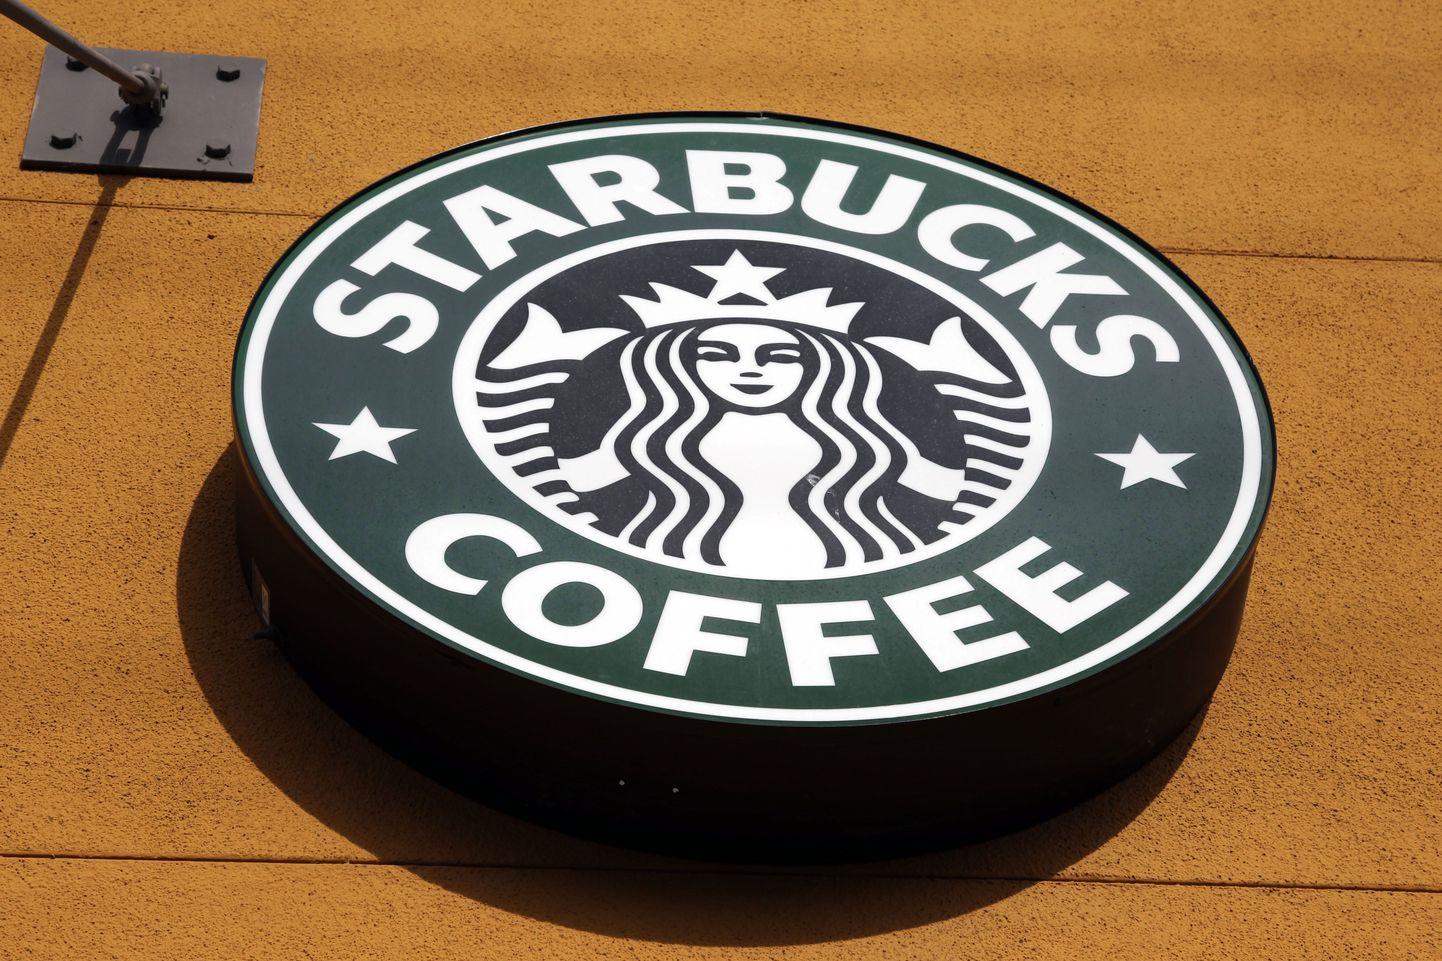 Starbucksi kohviku logo